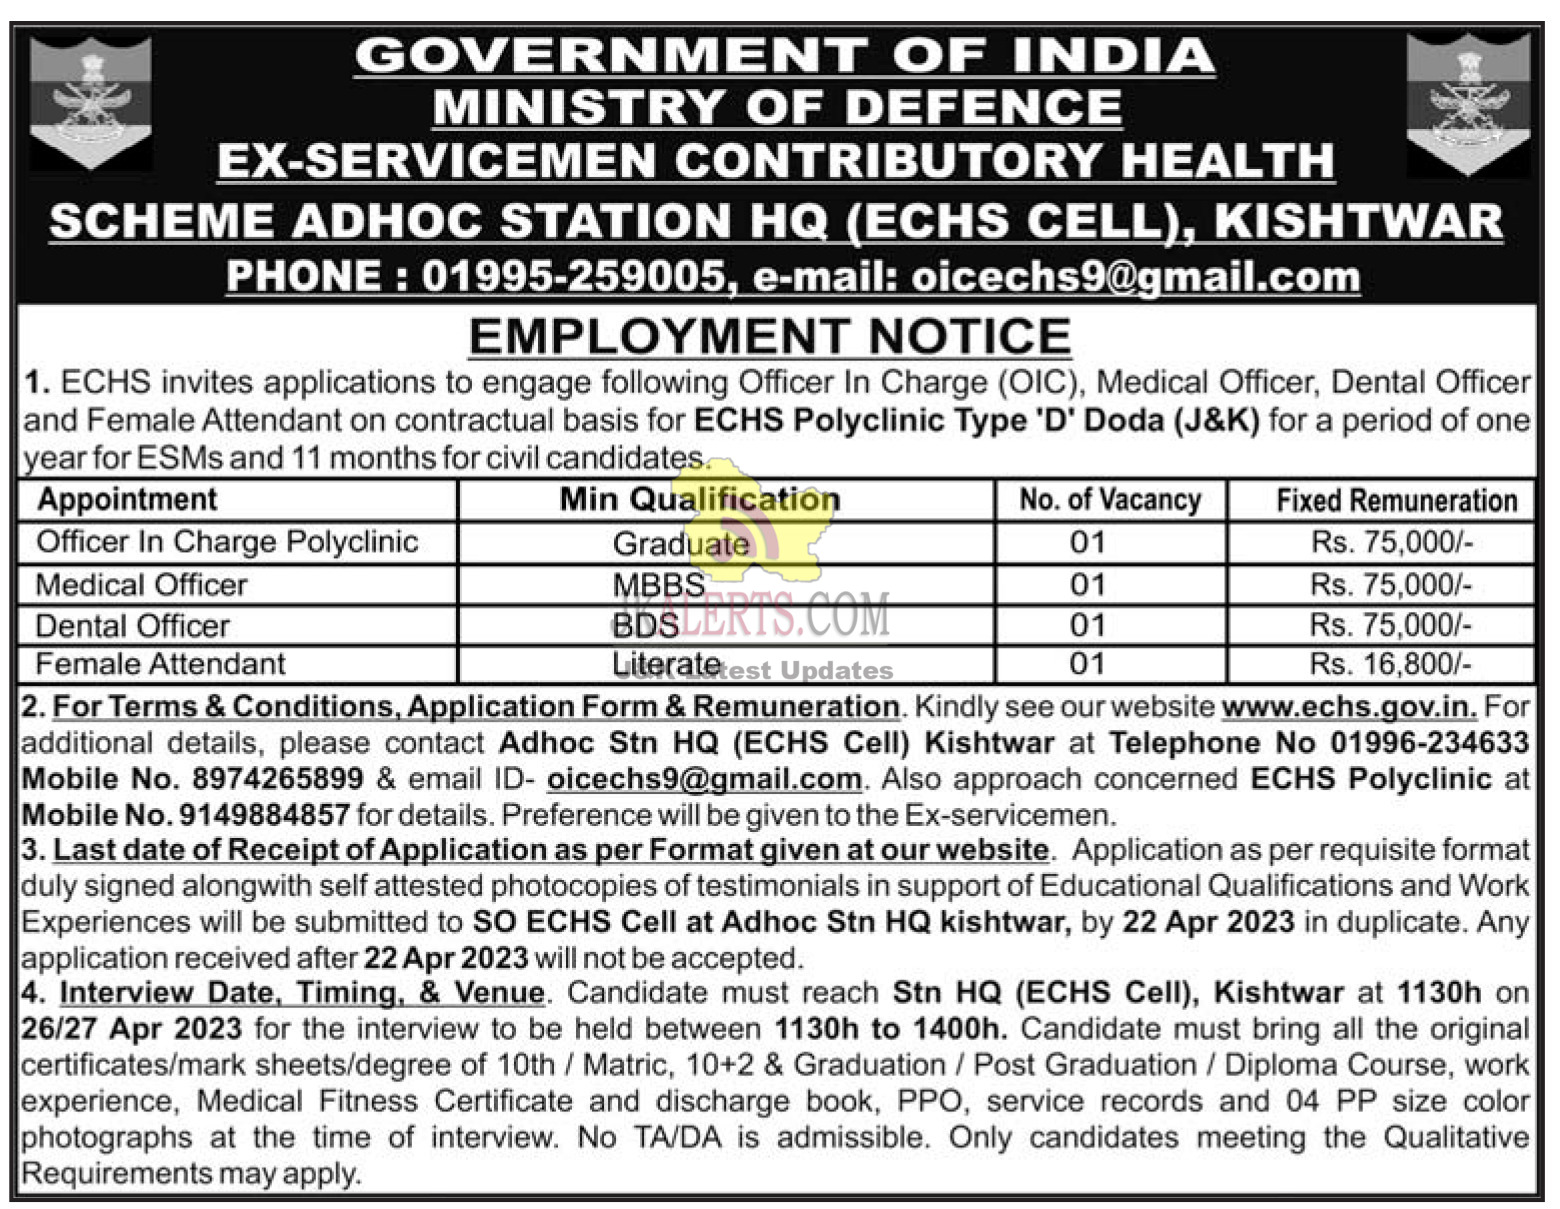 Job Vacancies 2023 at ECHS Kishtwar